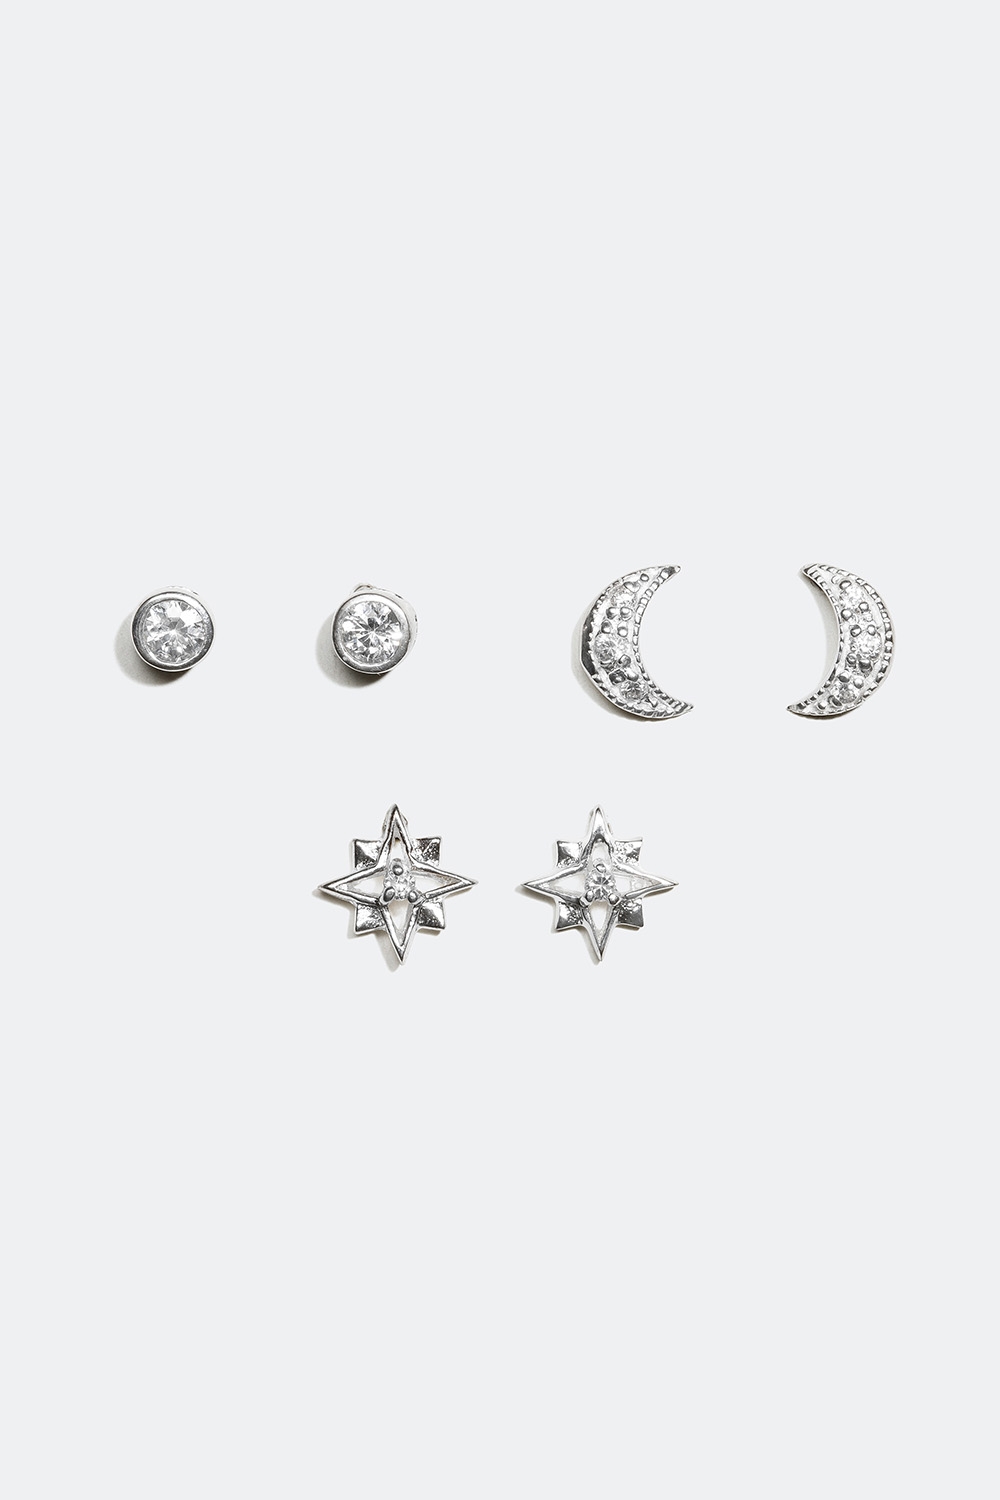 Studs i olika design, måne och stjärna, äkta silver, 3-pack i gruppen Äkta silver / Silverörhängen / Flerpack hos Glitter (323417011000)